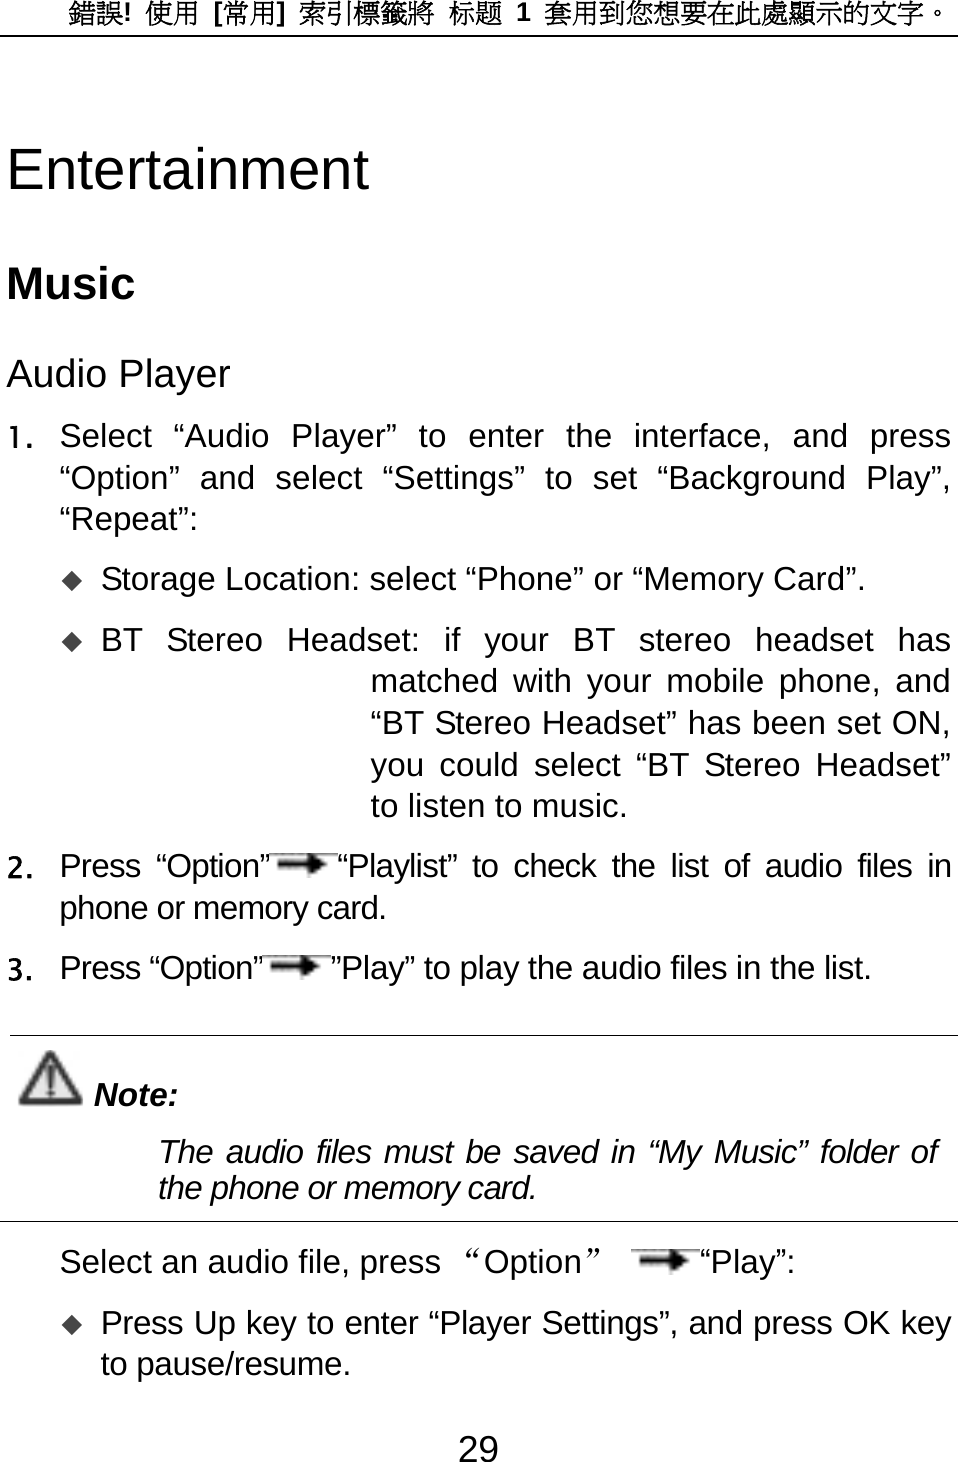 錯誤!  使用 [常用]  索引標籤將 标题 1 套用到您想要在此處顯示的文字。 29 Entertainment Music Audio Player 1. Select “Audio Player” to enter the interface, and press “Option” and select “Settings” to set “Background Play”, “Repeat”:   Storage Location: select “Phone” or “Memory Card”.    BT Stereo Headset: if your BT stereo headset has matched with your mobile phone, and “BT Stereo Headset” has been set ON, you could select “BT Stereo Headset” to listen to music.   2. Press “Option” “Playlist” to check the list of audio files in phone or memory card.   3. Press “Option” ”Play” to play the audio files in the list.  Note: The audio files must be saved in “My Music” folder of the phone or memory card.    Select an audio file, press “Option” “Play”:  Press Up key to enter “Player Settings”, and press OK key to pause/resume.   